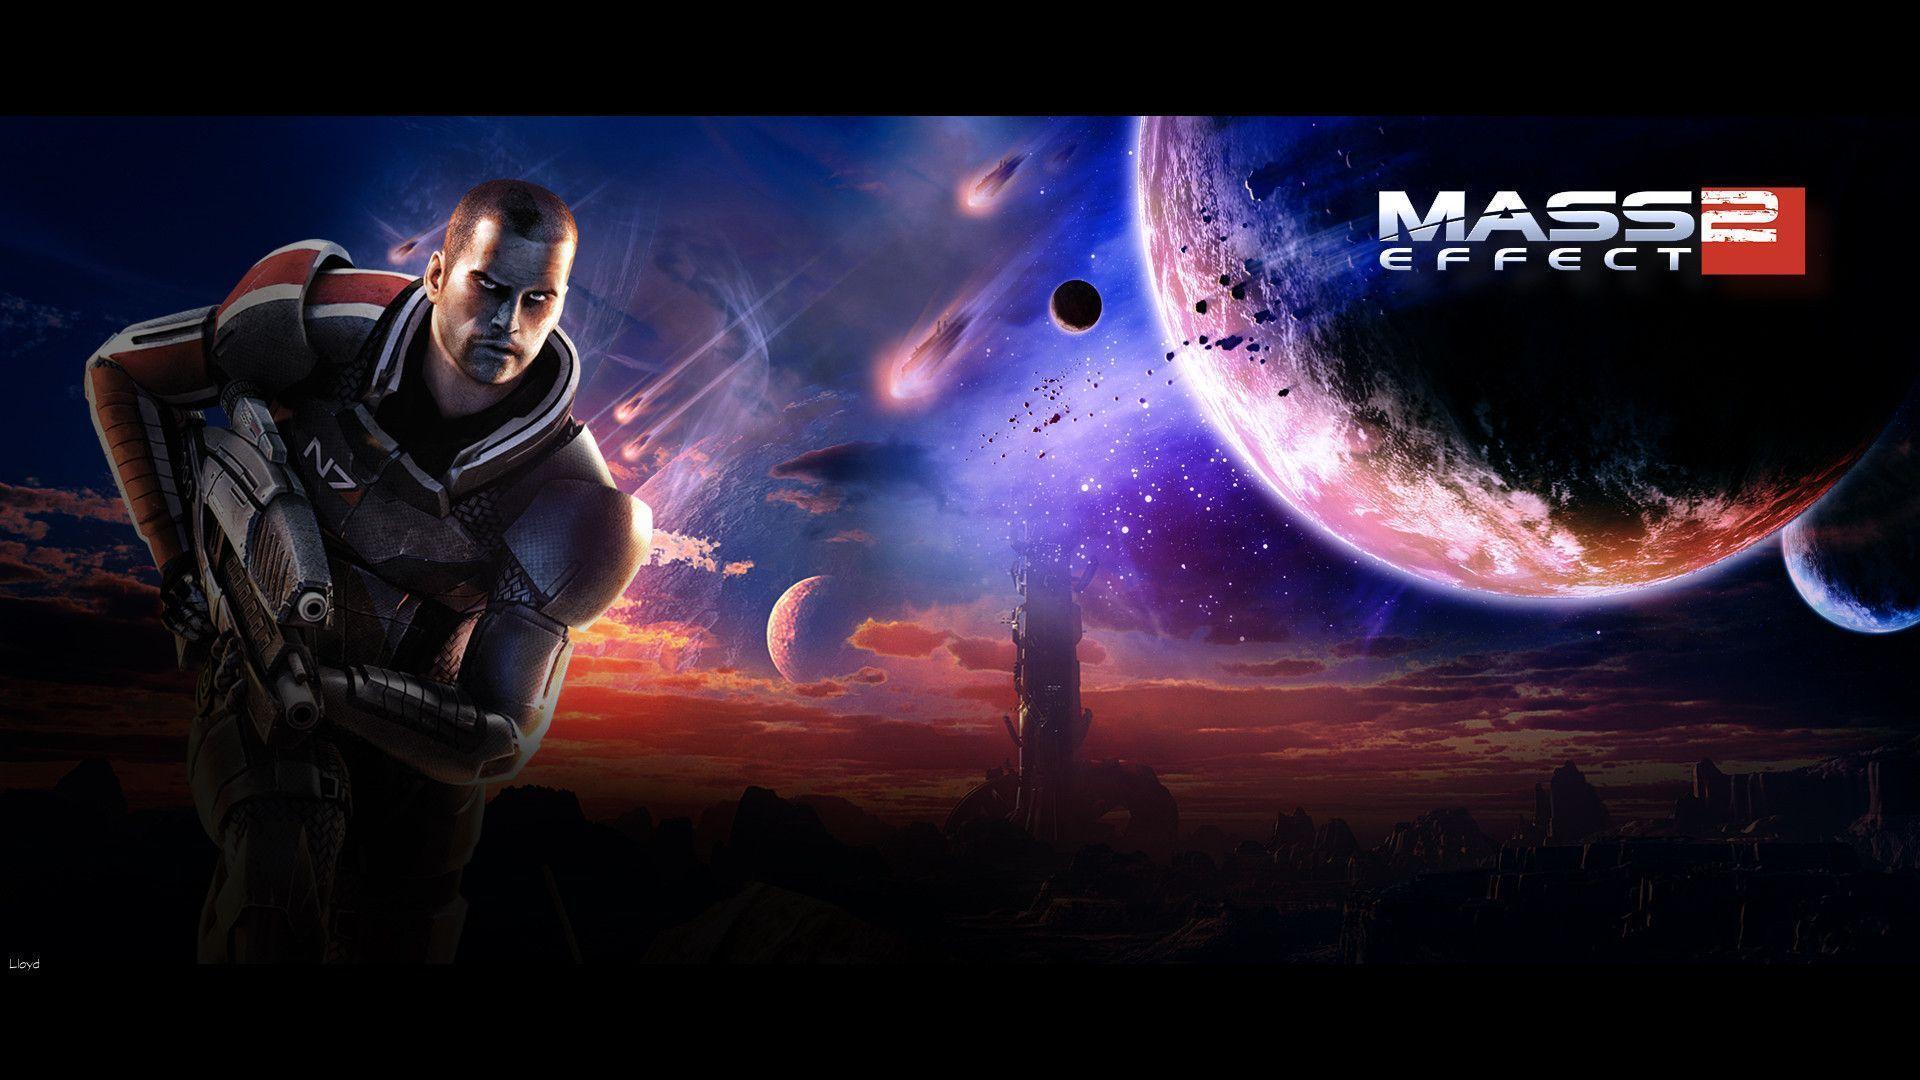 Wallpaper For > Mass Effect 1 Wallpaper 1920x1080